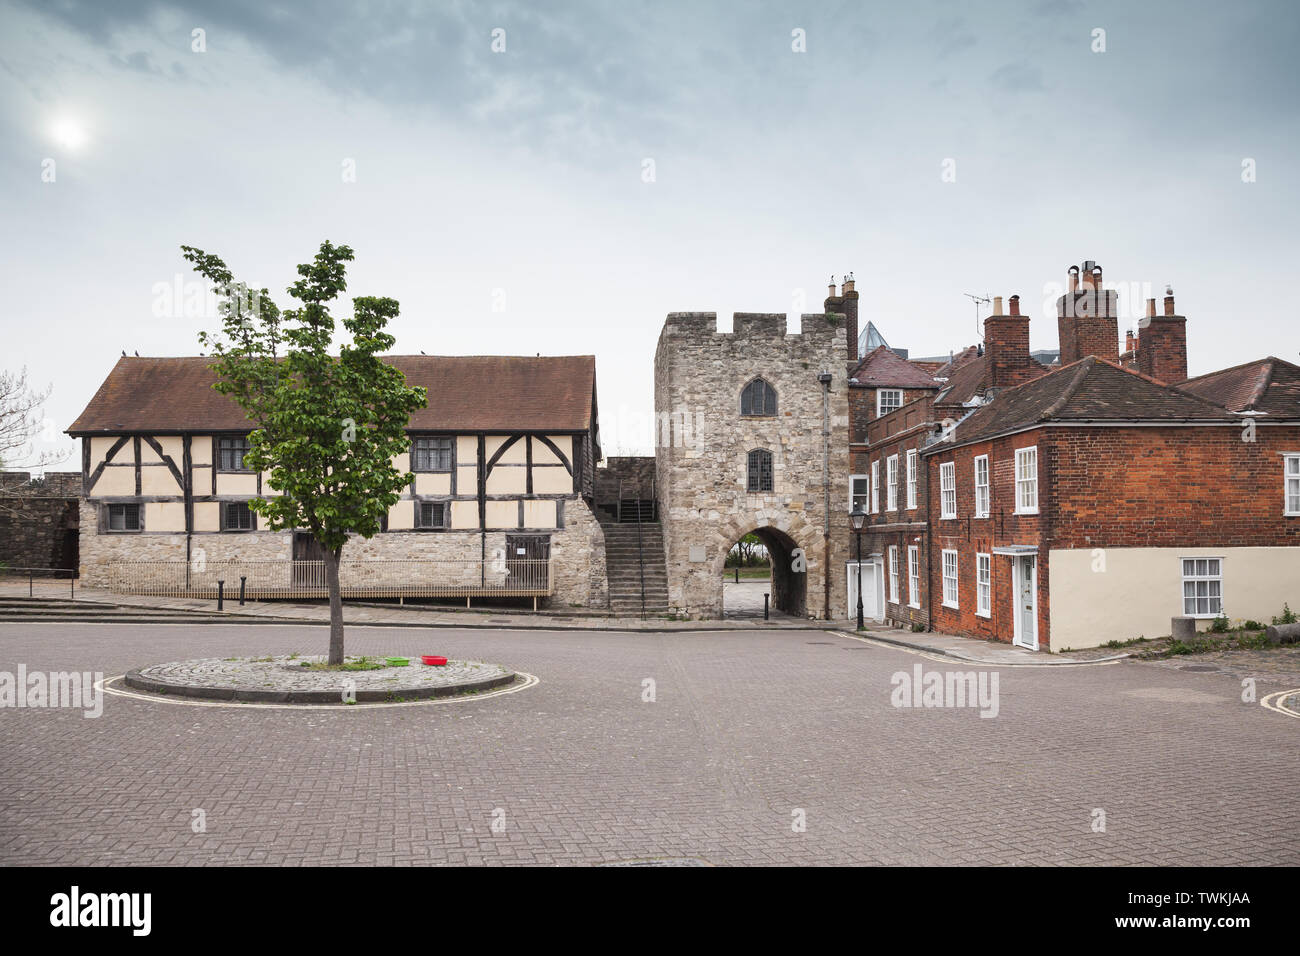 Southampton street view con la vecchia torre in pietra e abitazioni, Regno Unito Foto Stock